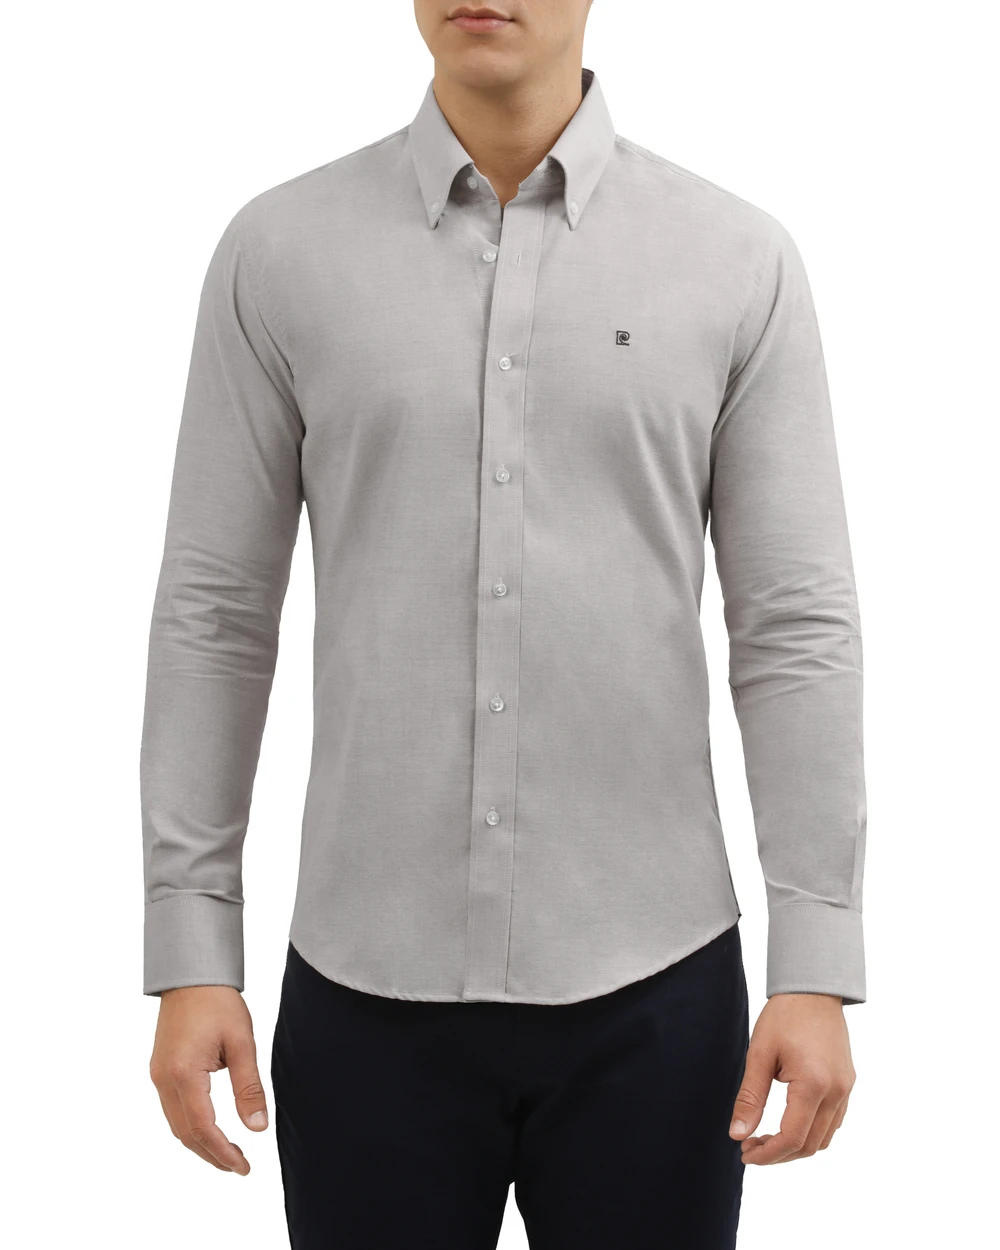 Camisa slim fit manga larga   oxford color gris
